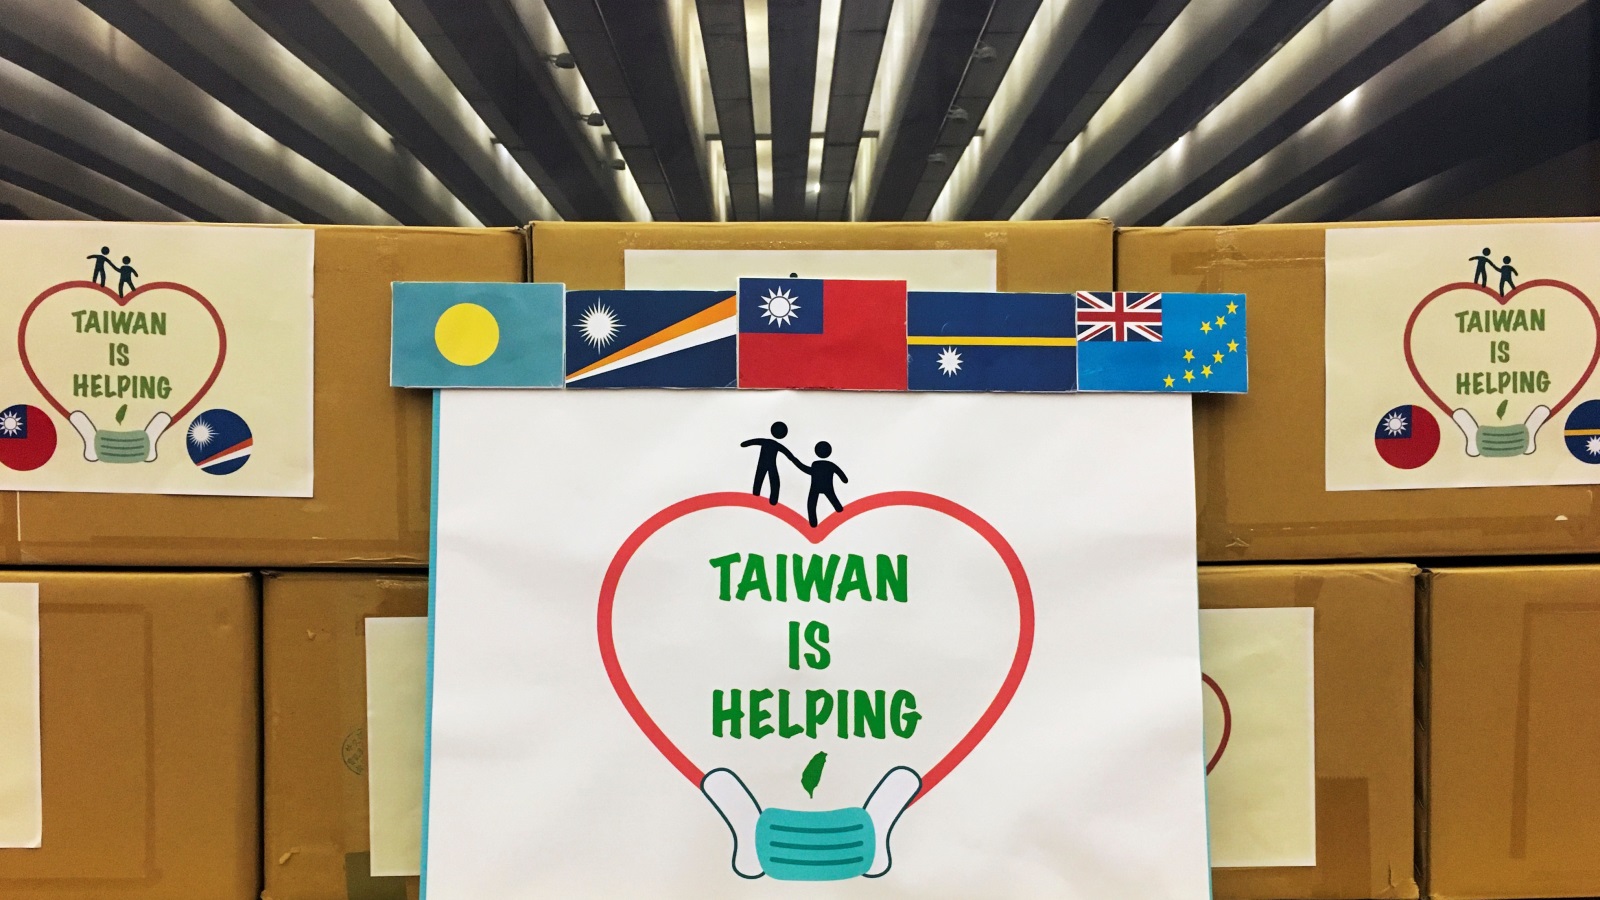 ترتكز المساعدات الإنمائية لتايوان على تعزيز قوتها الناعمة وبناء سمعة البلاد الدولية وإظهار الفوارق بينها وبين الصين